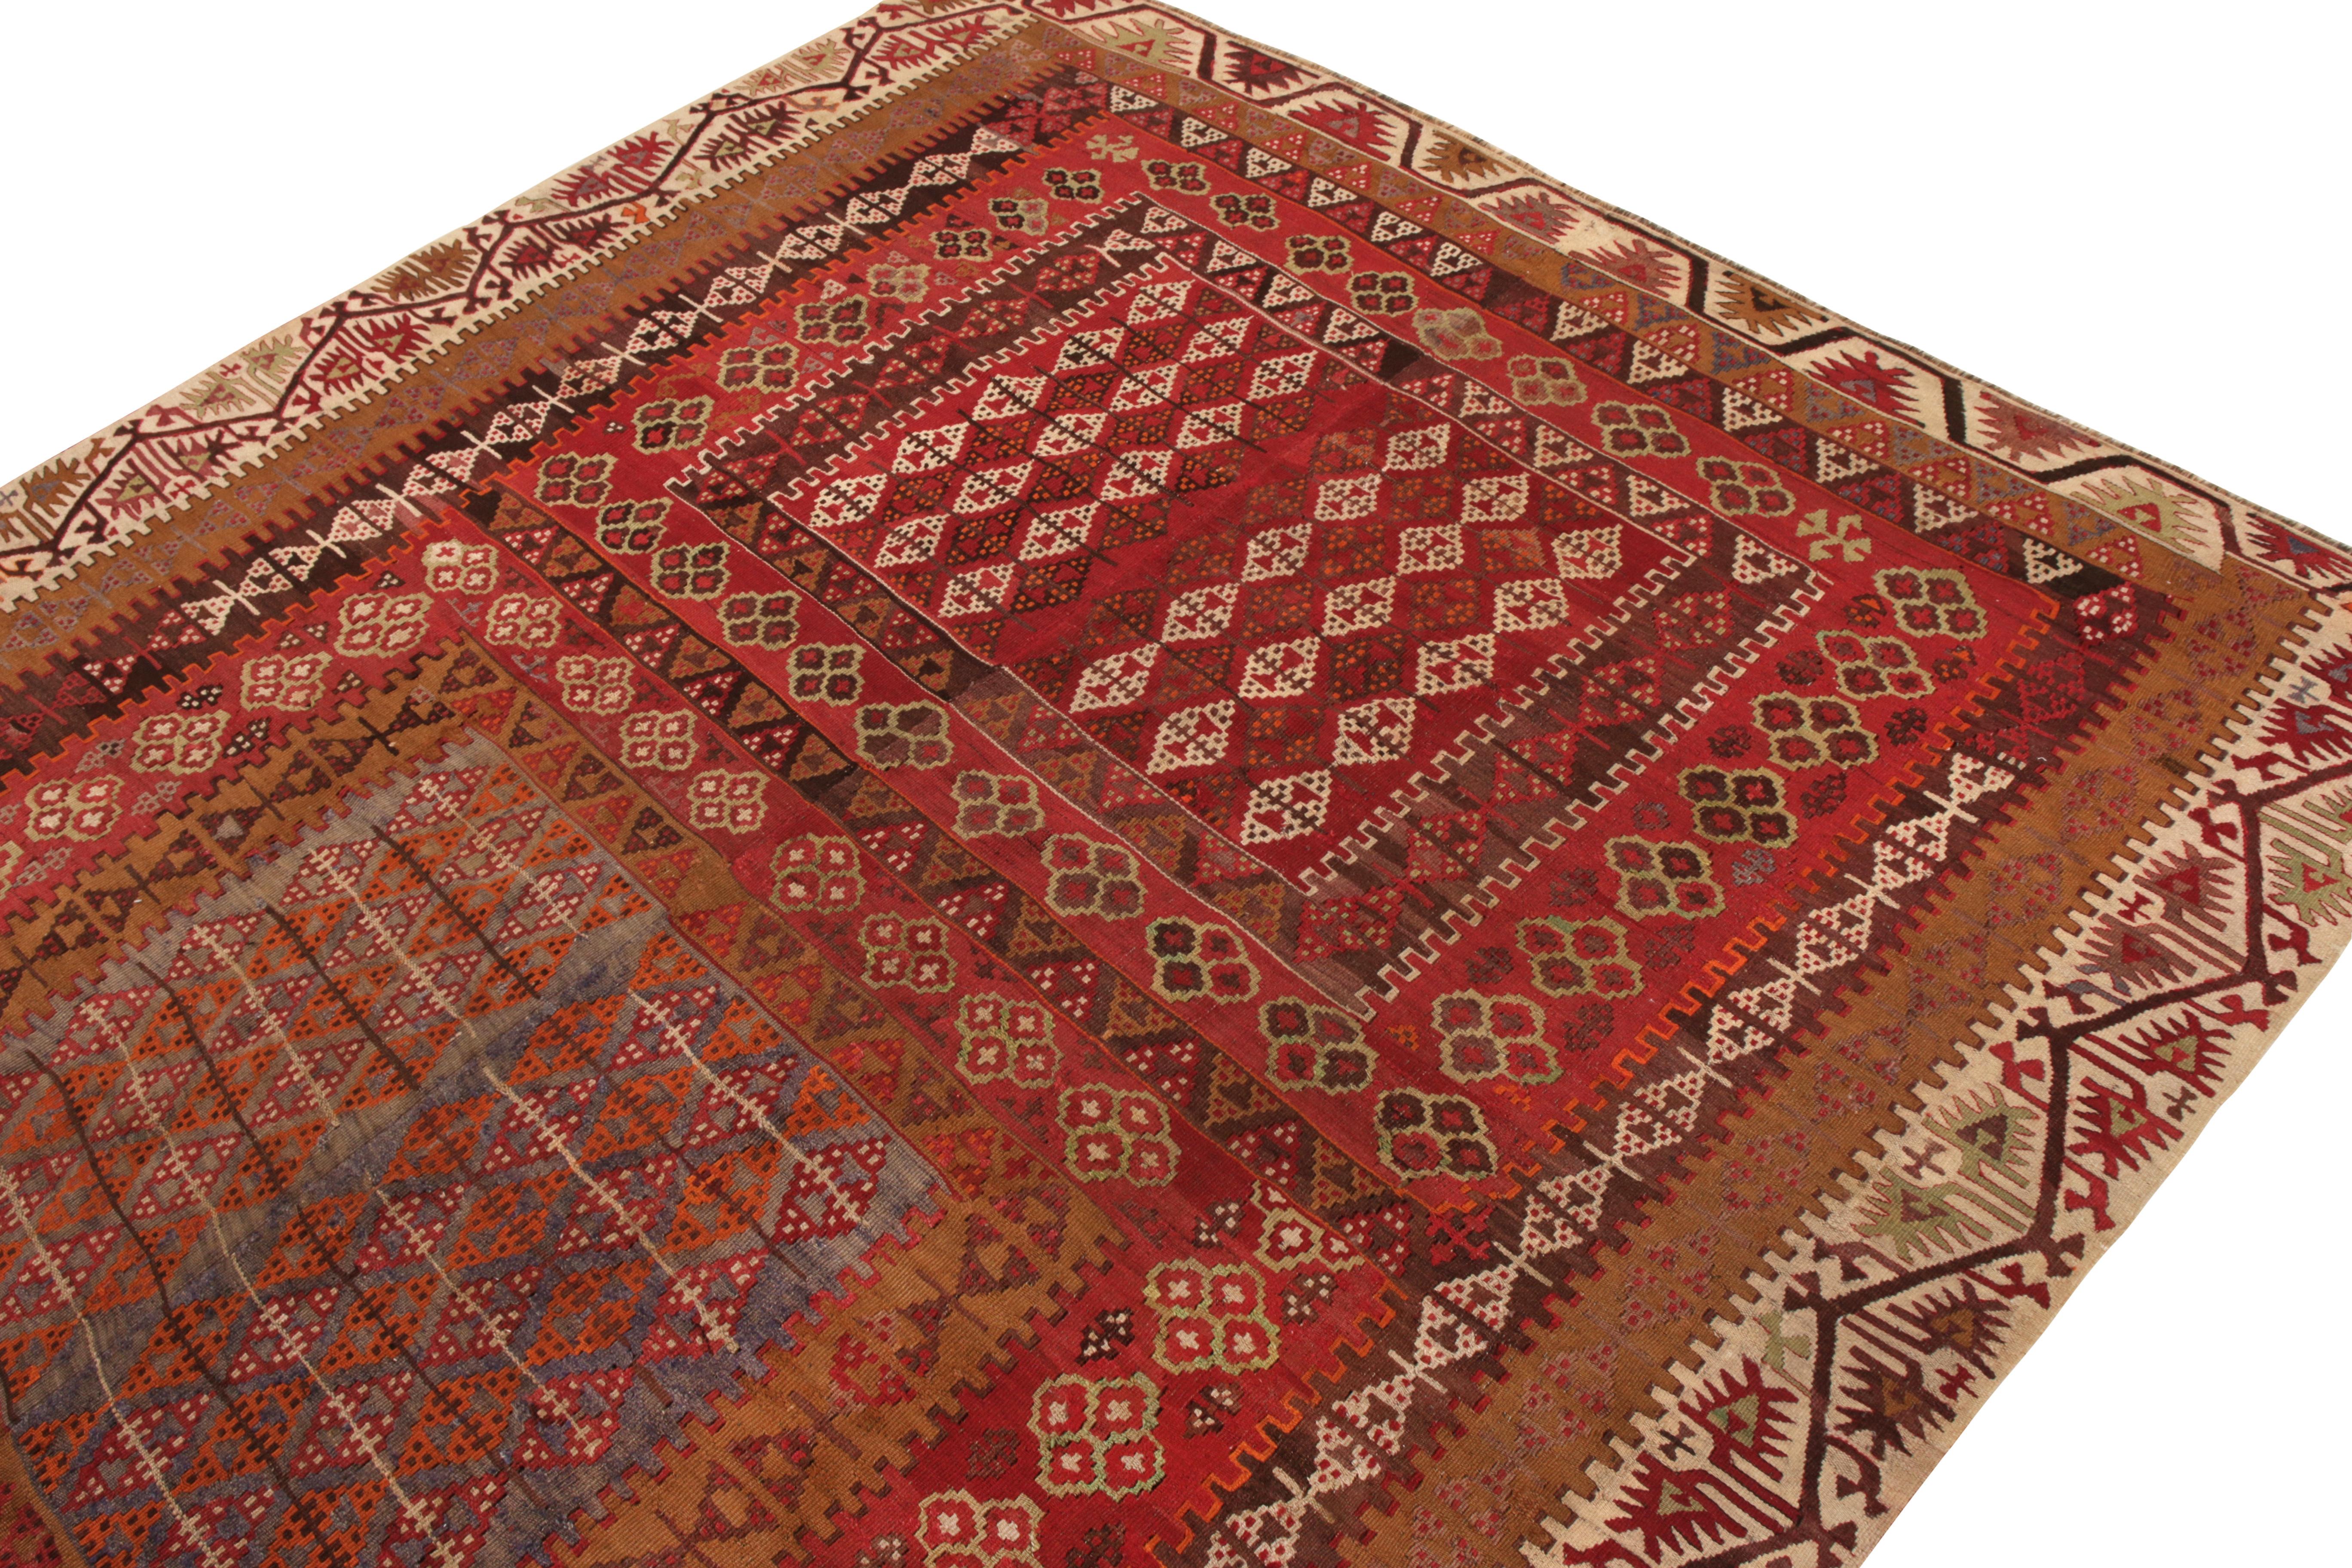 Tribal Vintage Kayseri Kilim Rug in Red and Brown Geometric pattern by Rug & Kilim For Sale